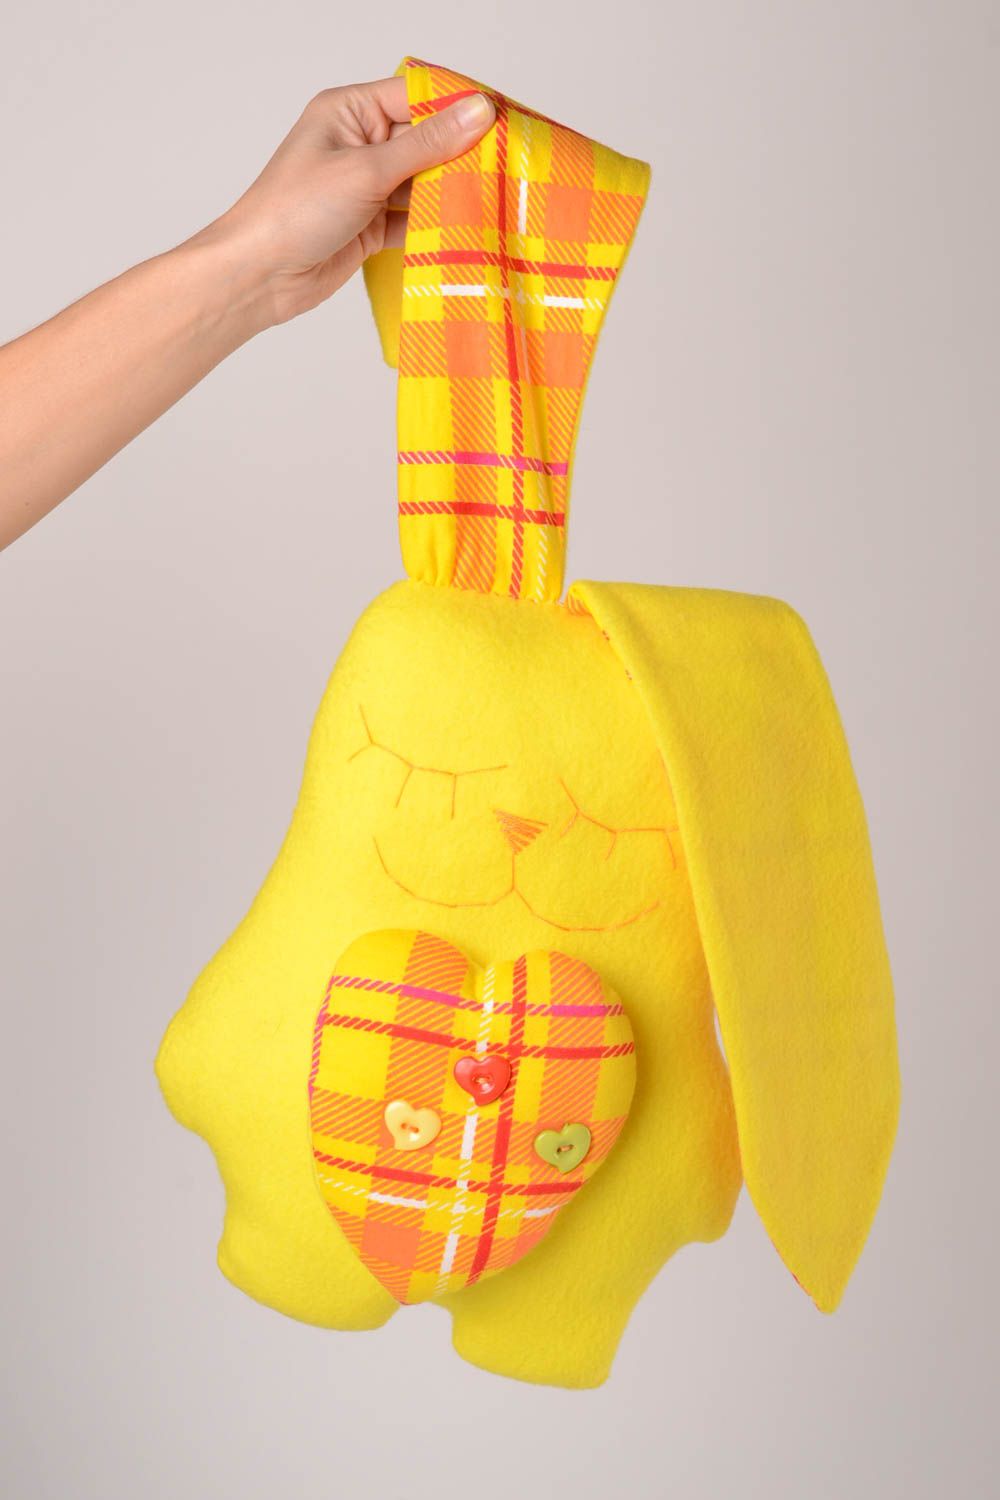 Muñeco de tela juguete artesanal peluche original conejito durmiendo amarillo foto 2